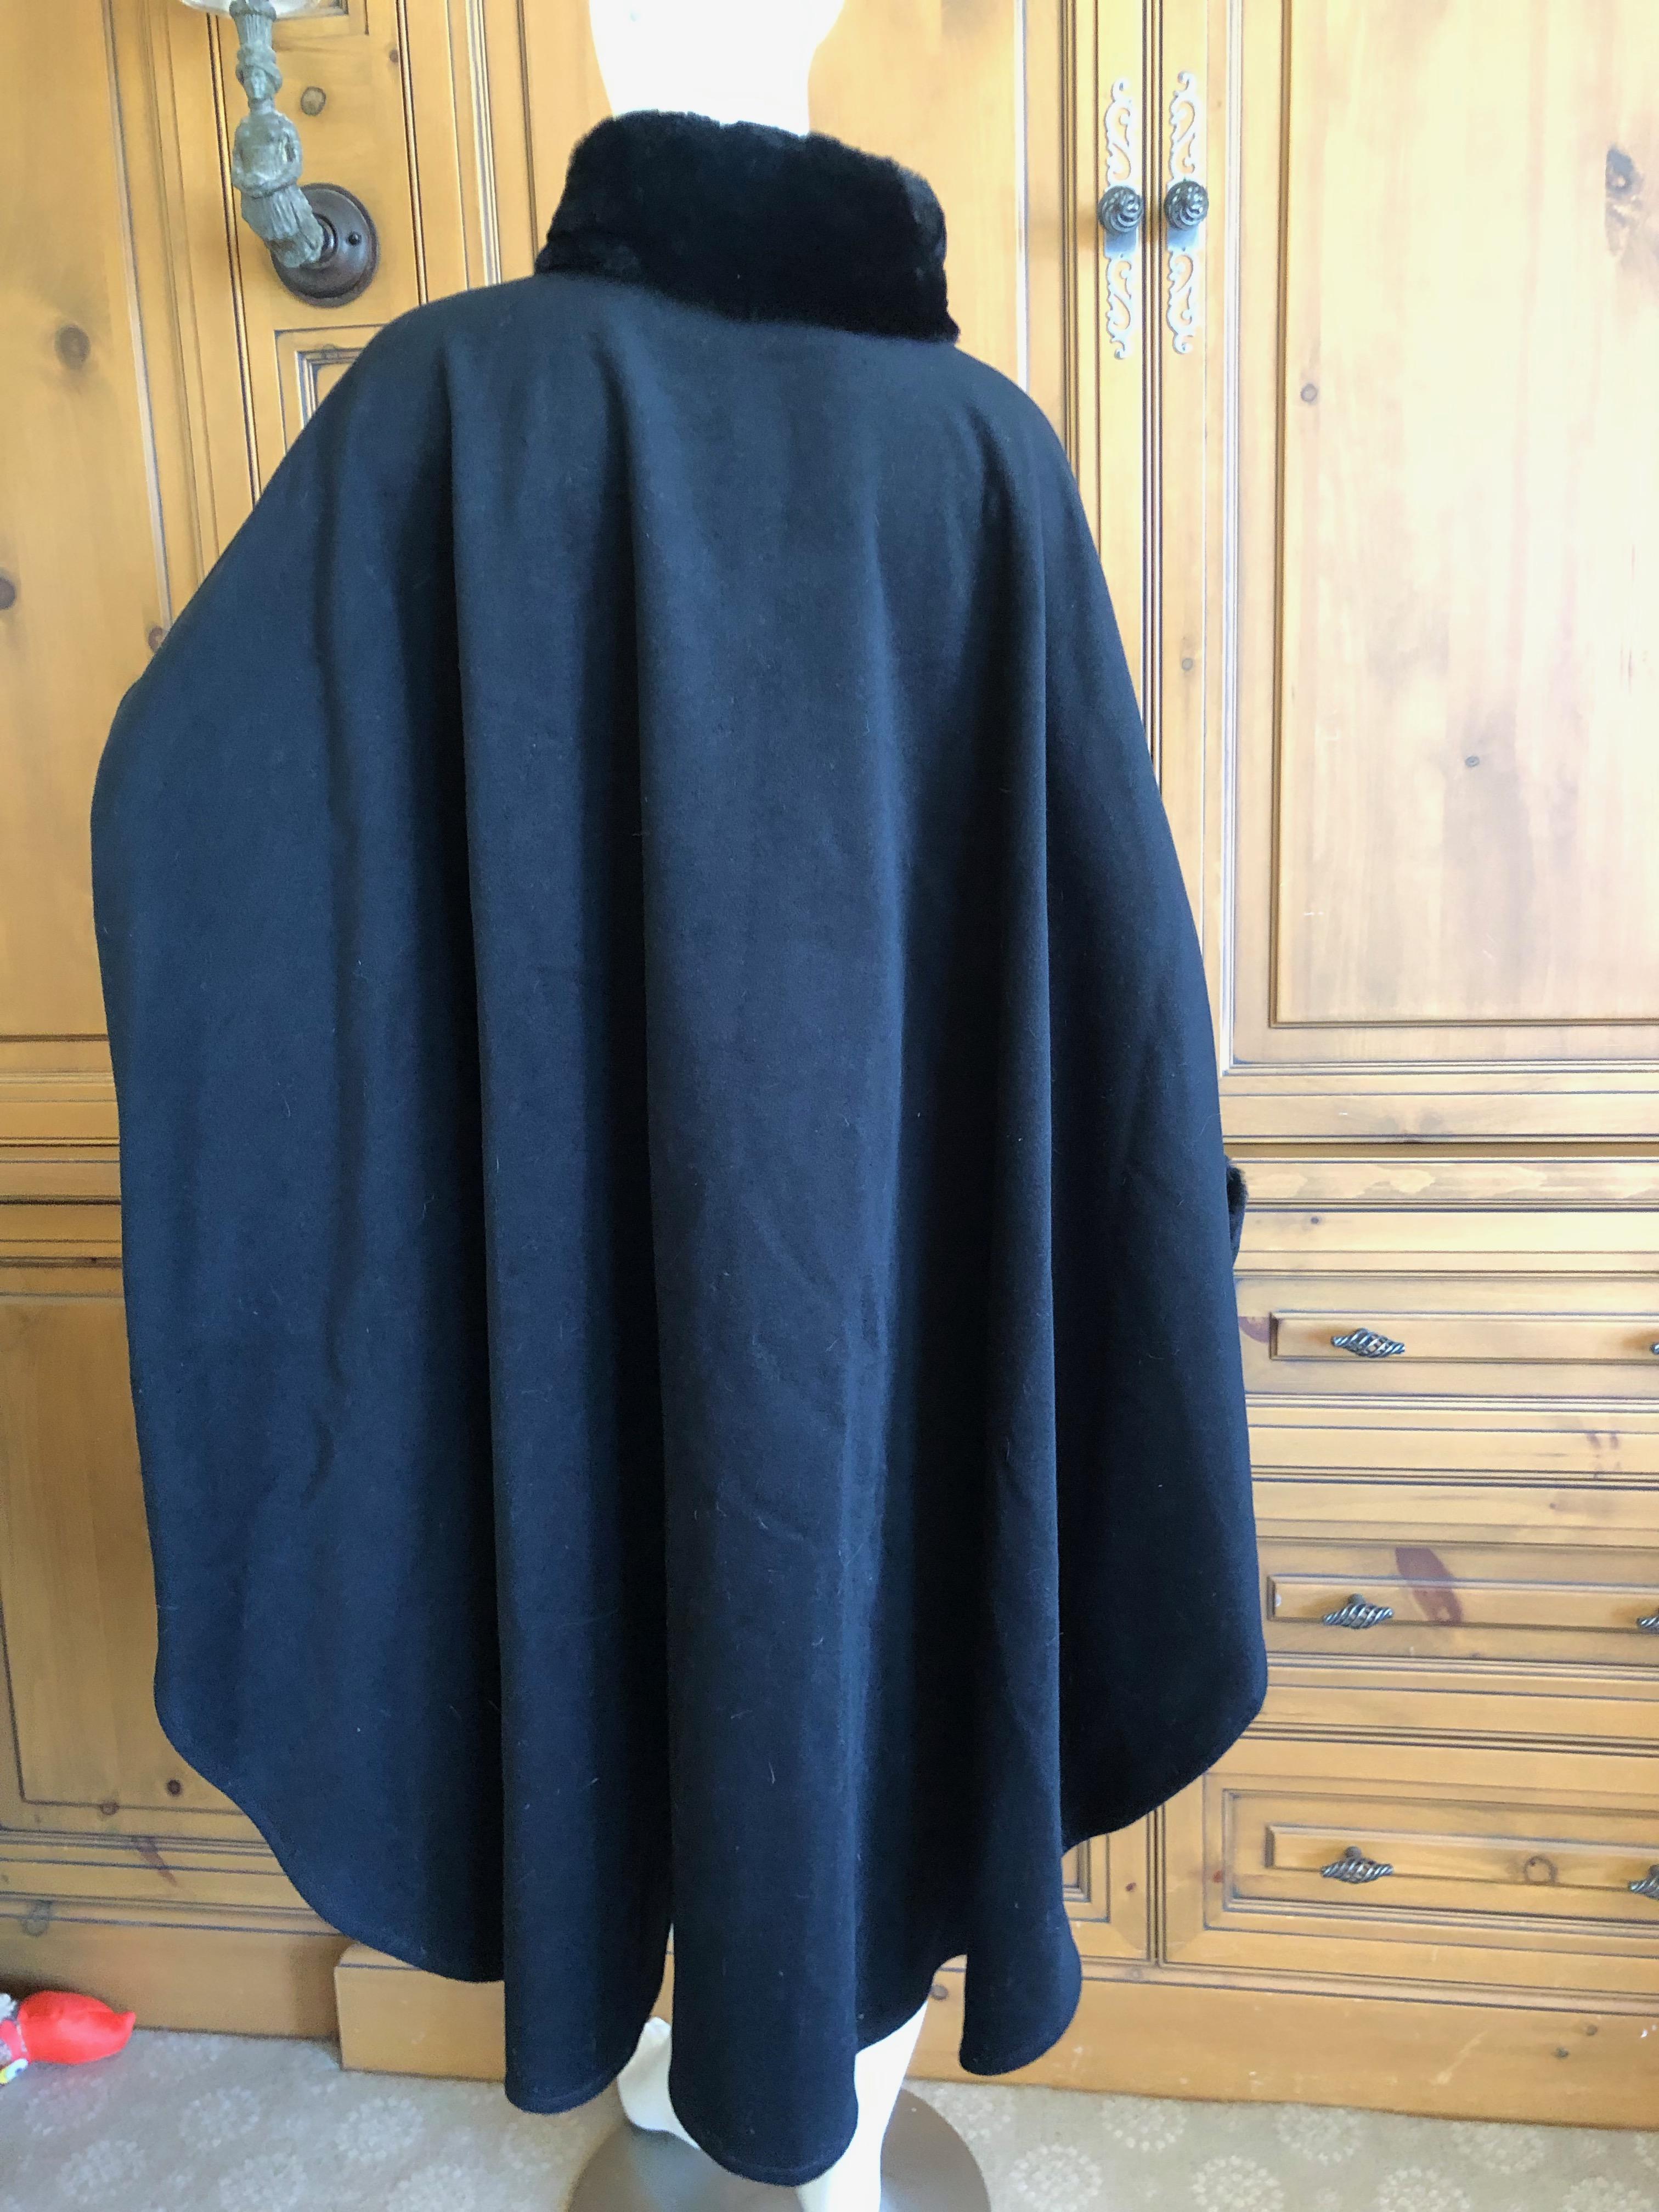 Yves Saint Laurent Fourrures Vintage Black Cashmere Cape w Fur Collars and Cuffs For Sale 1